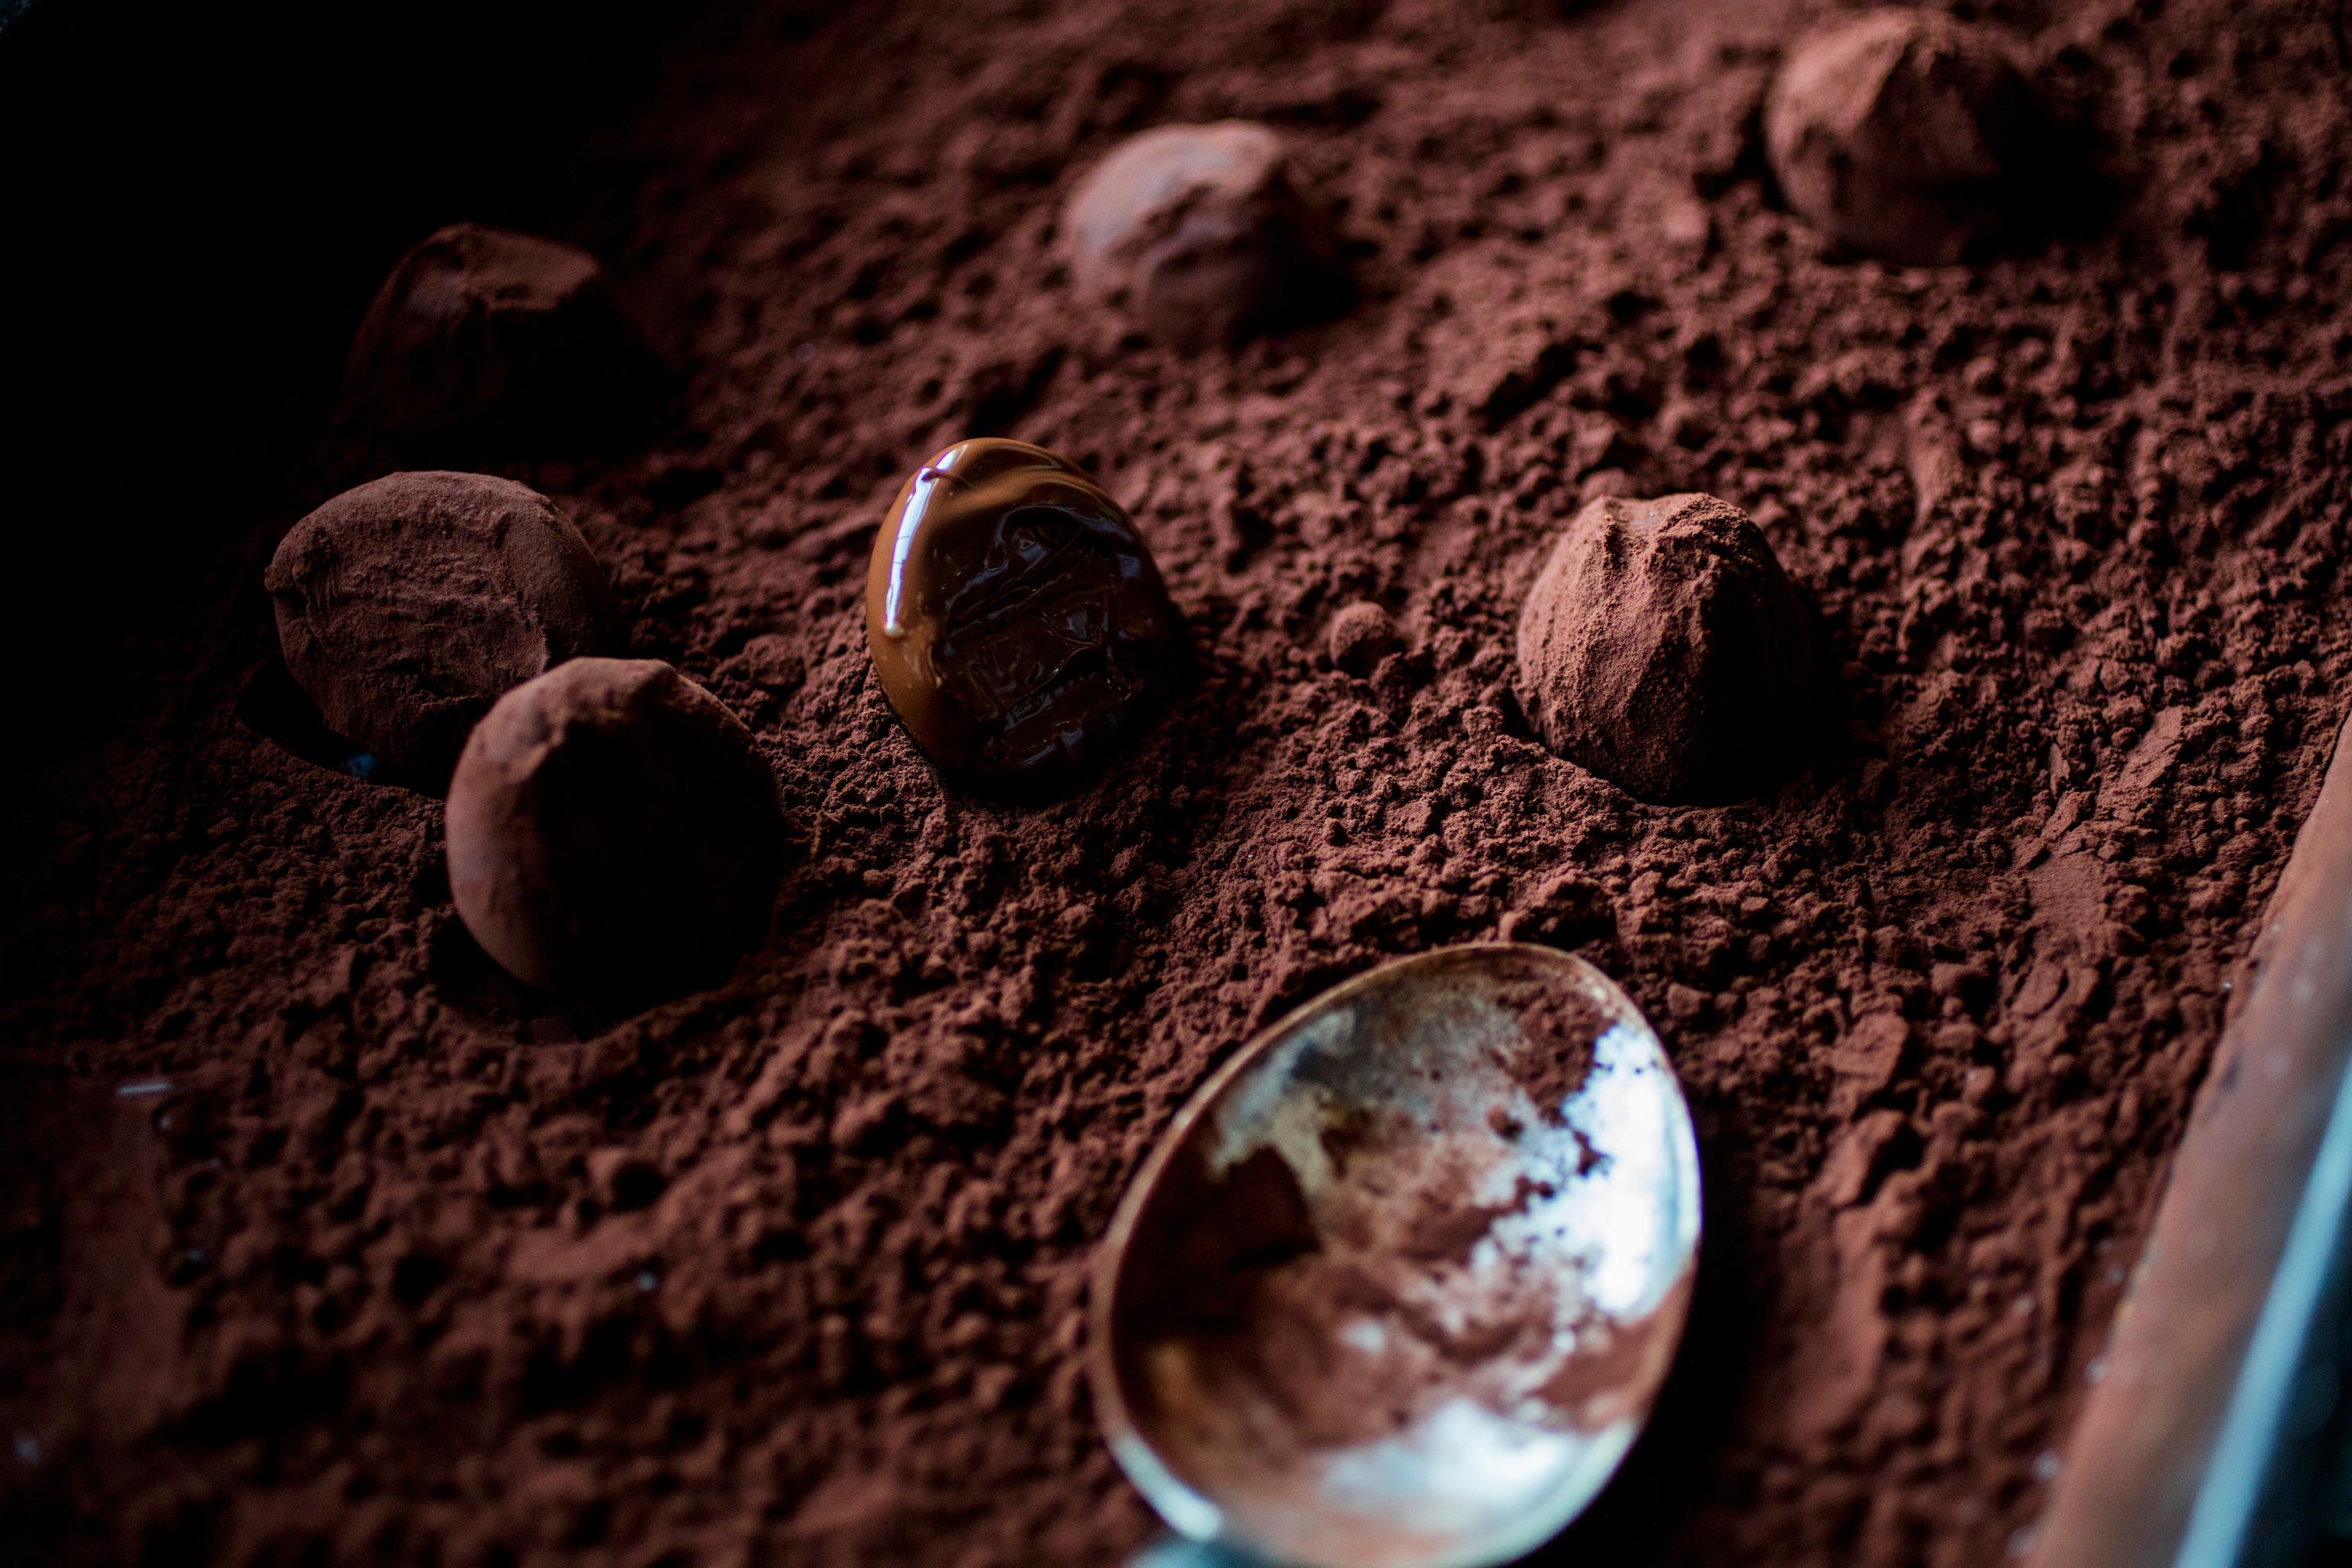 Rull trøflene i siktet kakao, melis eller hva du måtte ønske. Rist av det overflødige og oppbevar konfekten kjølig i en tett boks.